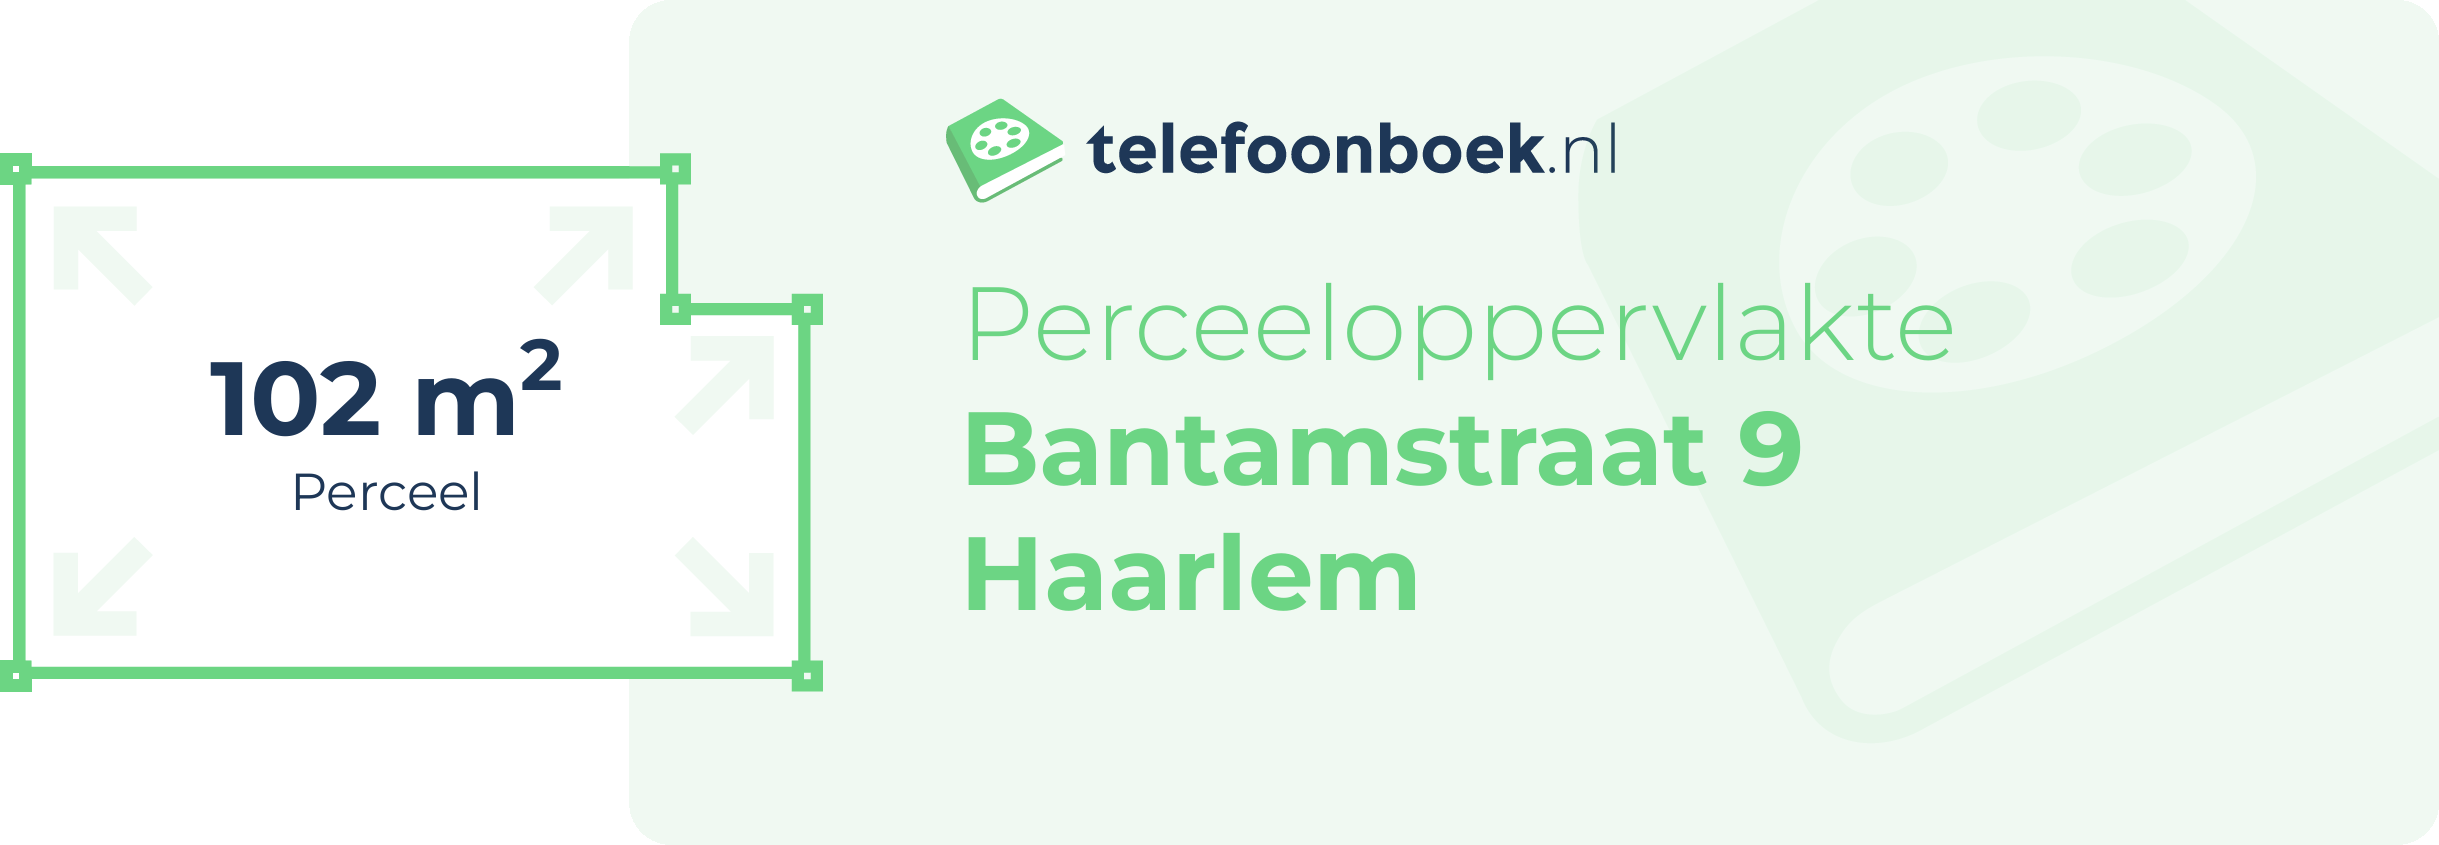 Perceeloppervlakte Bantamstraat 9 Haarlem